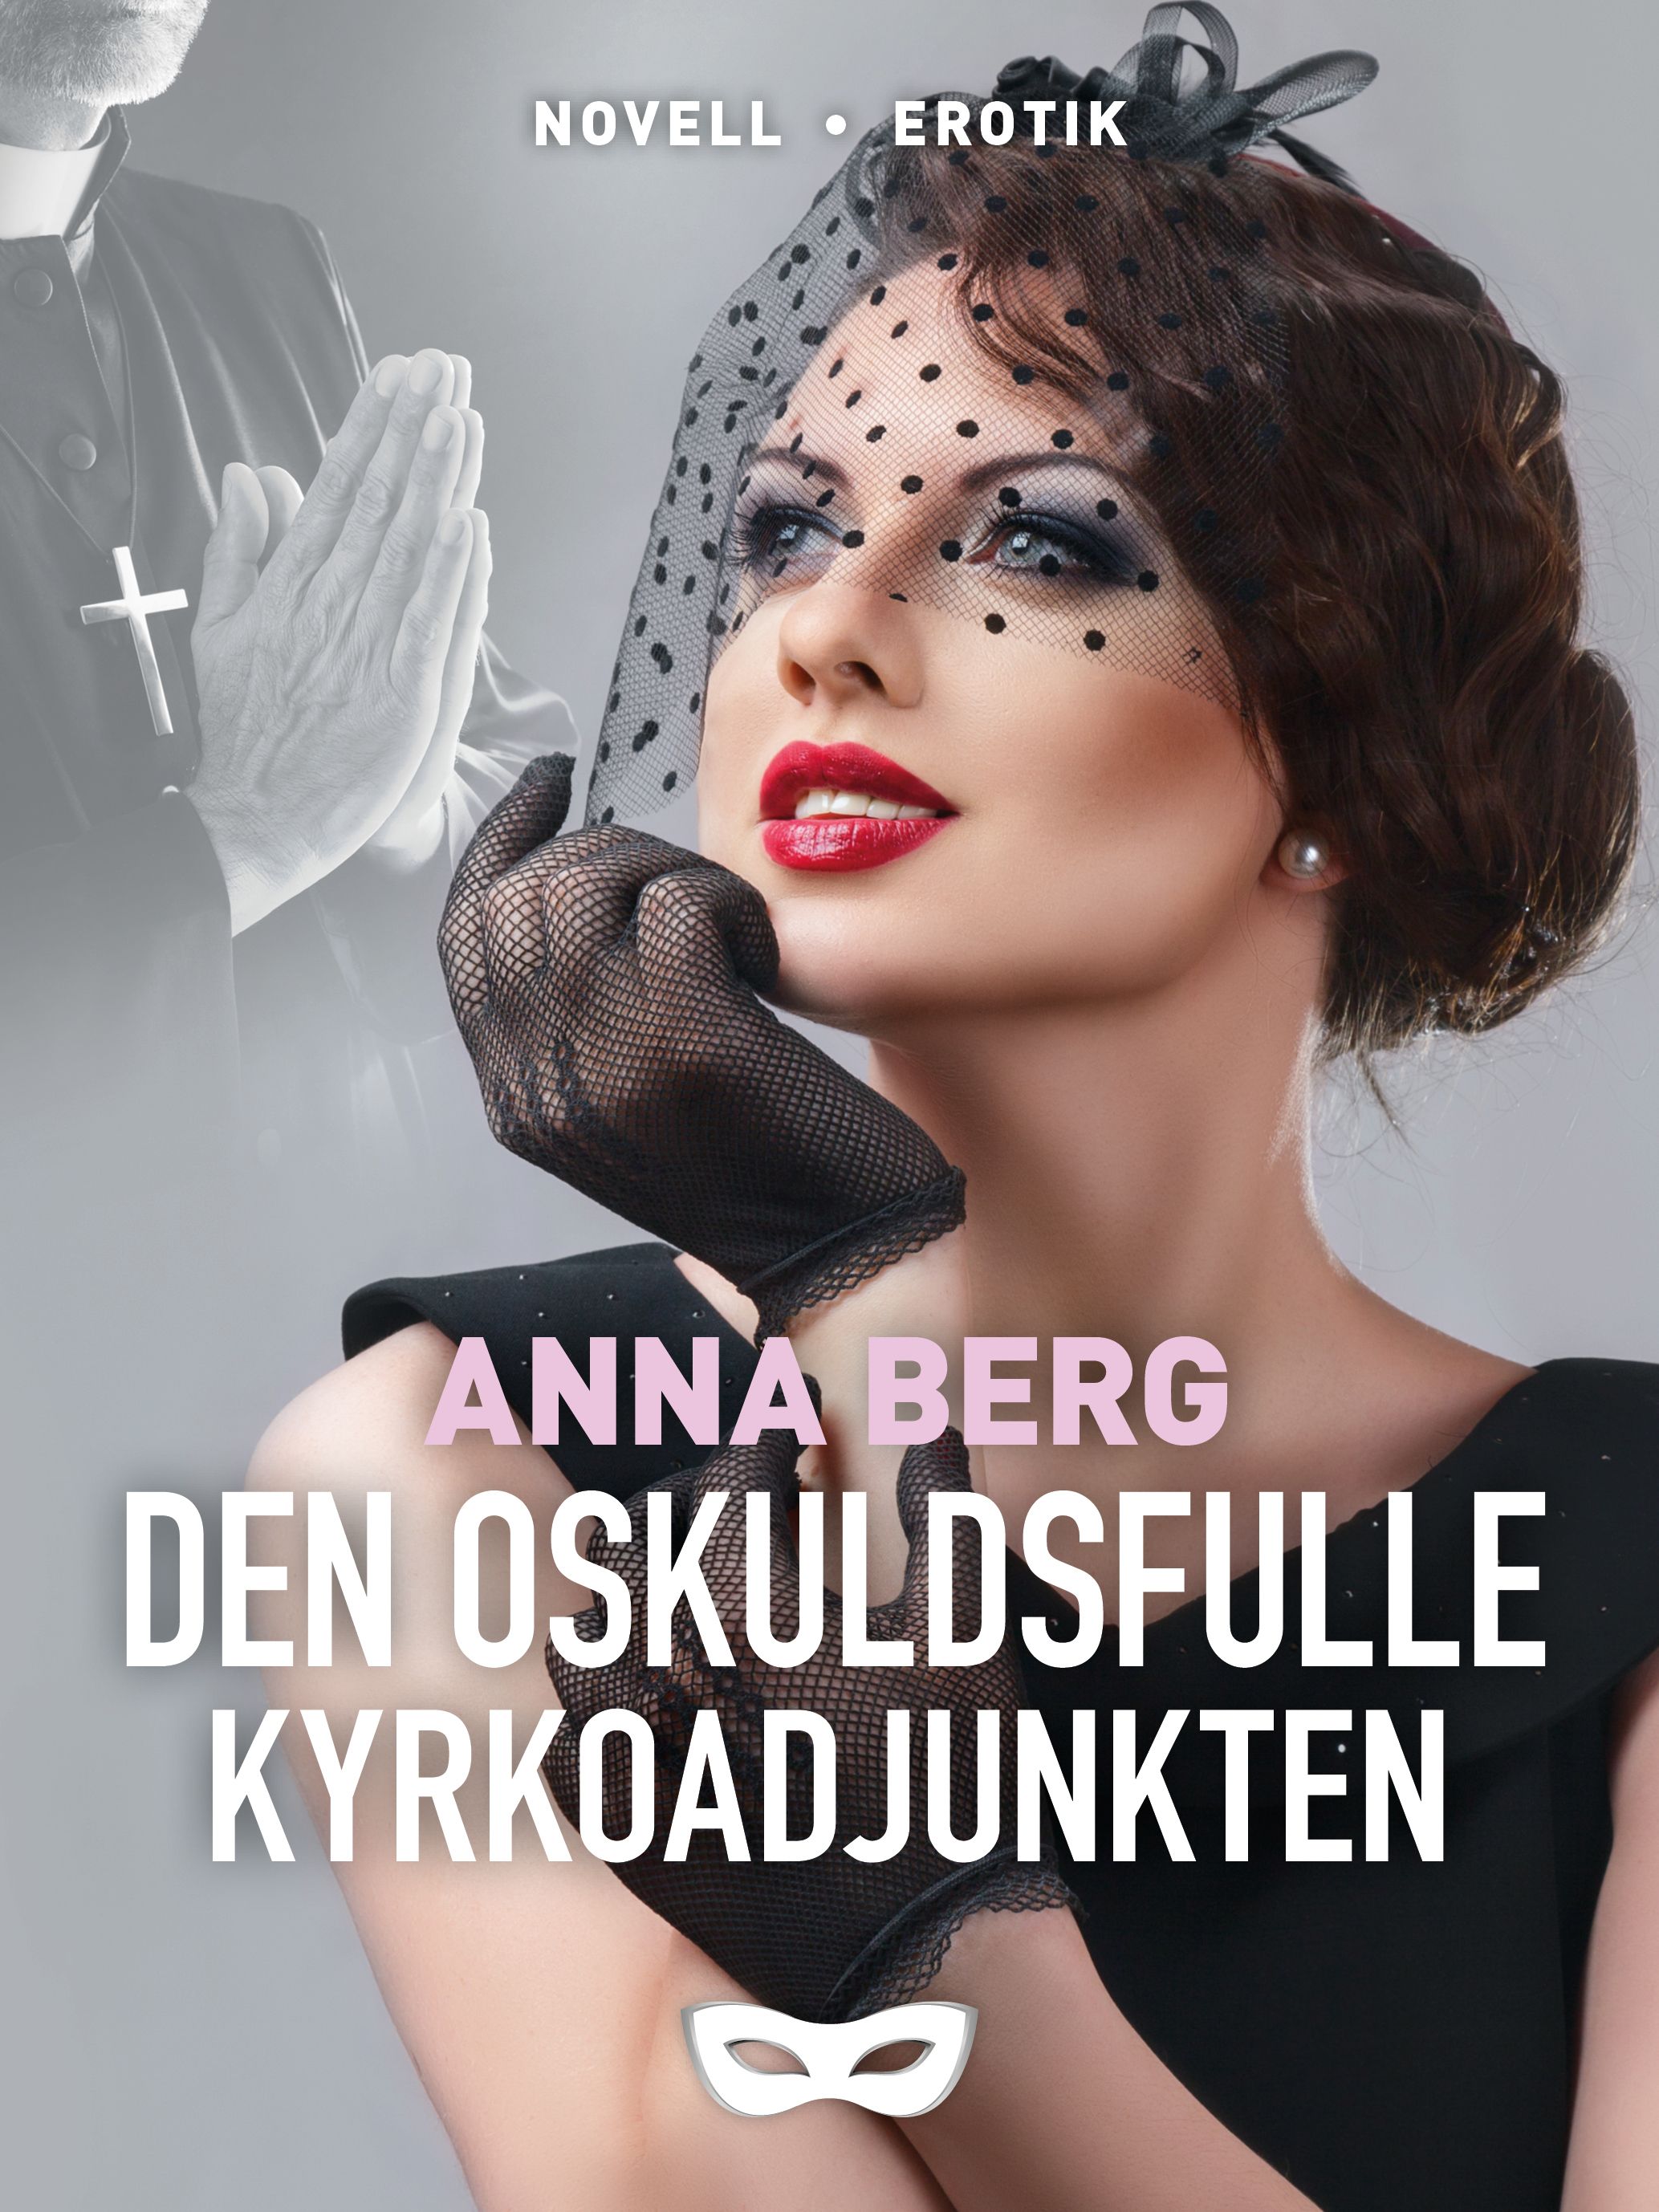 Den oskuldsfulle kyrkoadjunkten, e-bog af Anna Berg